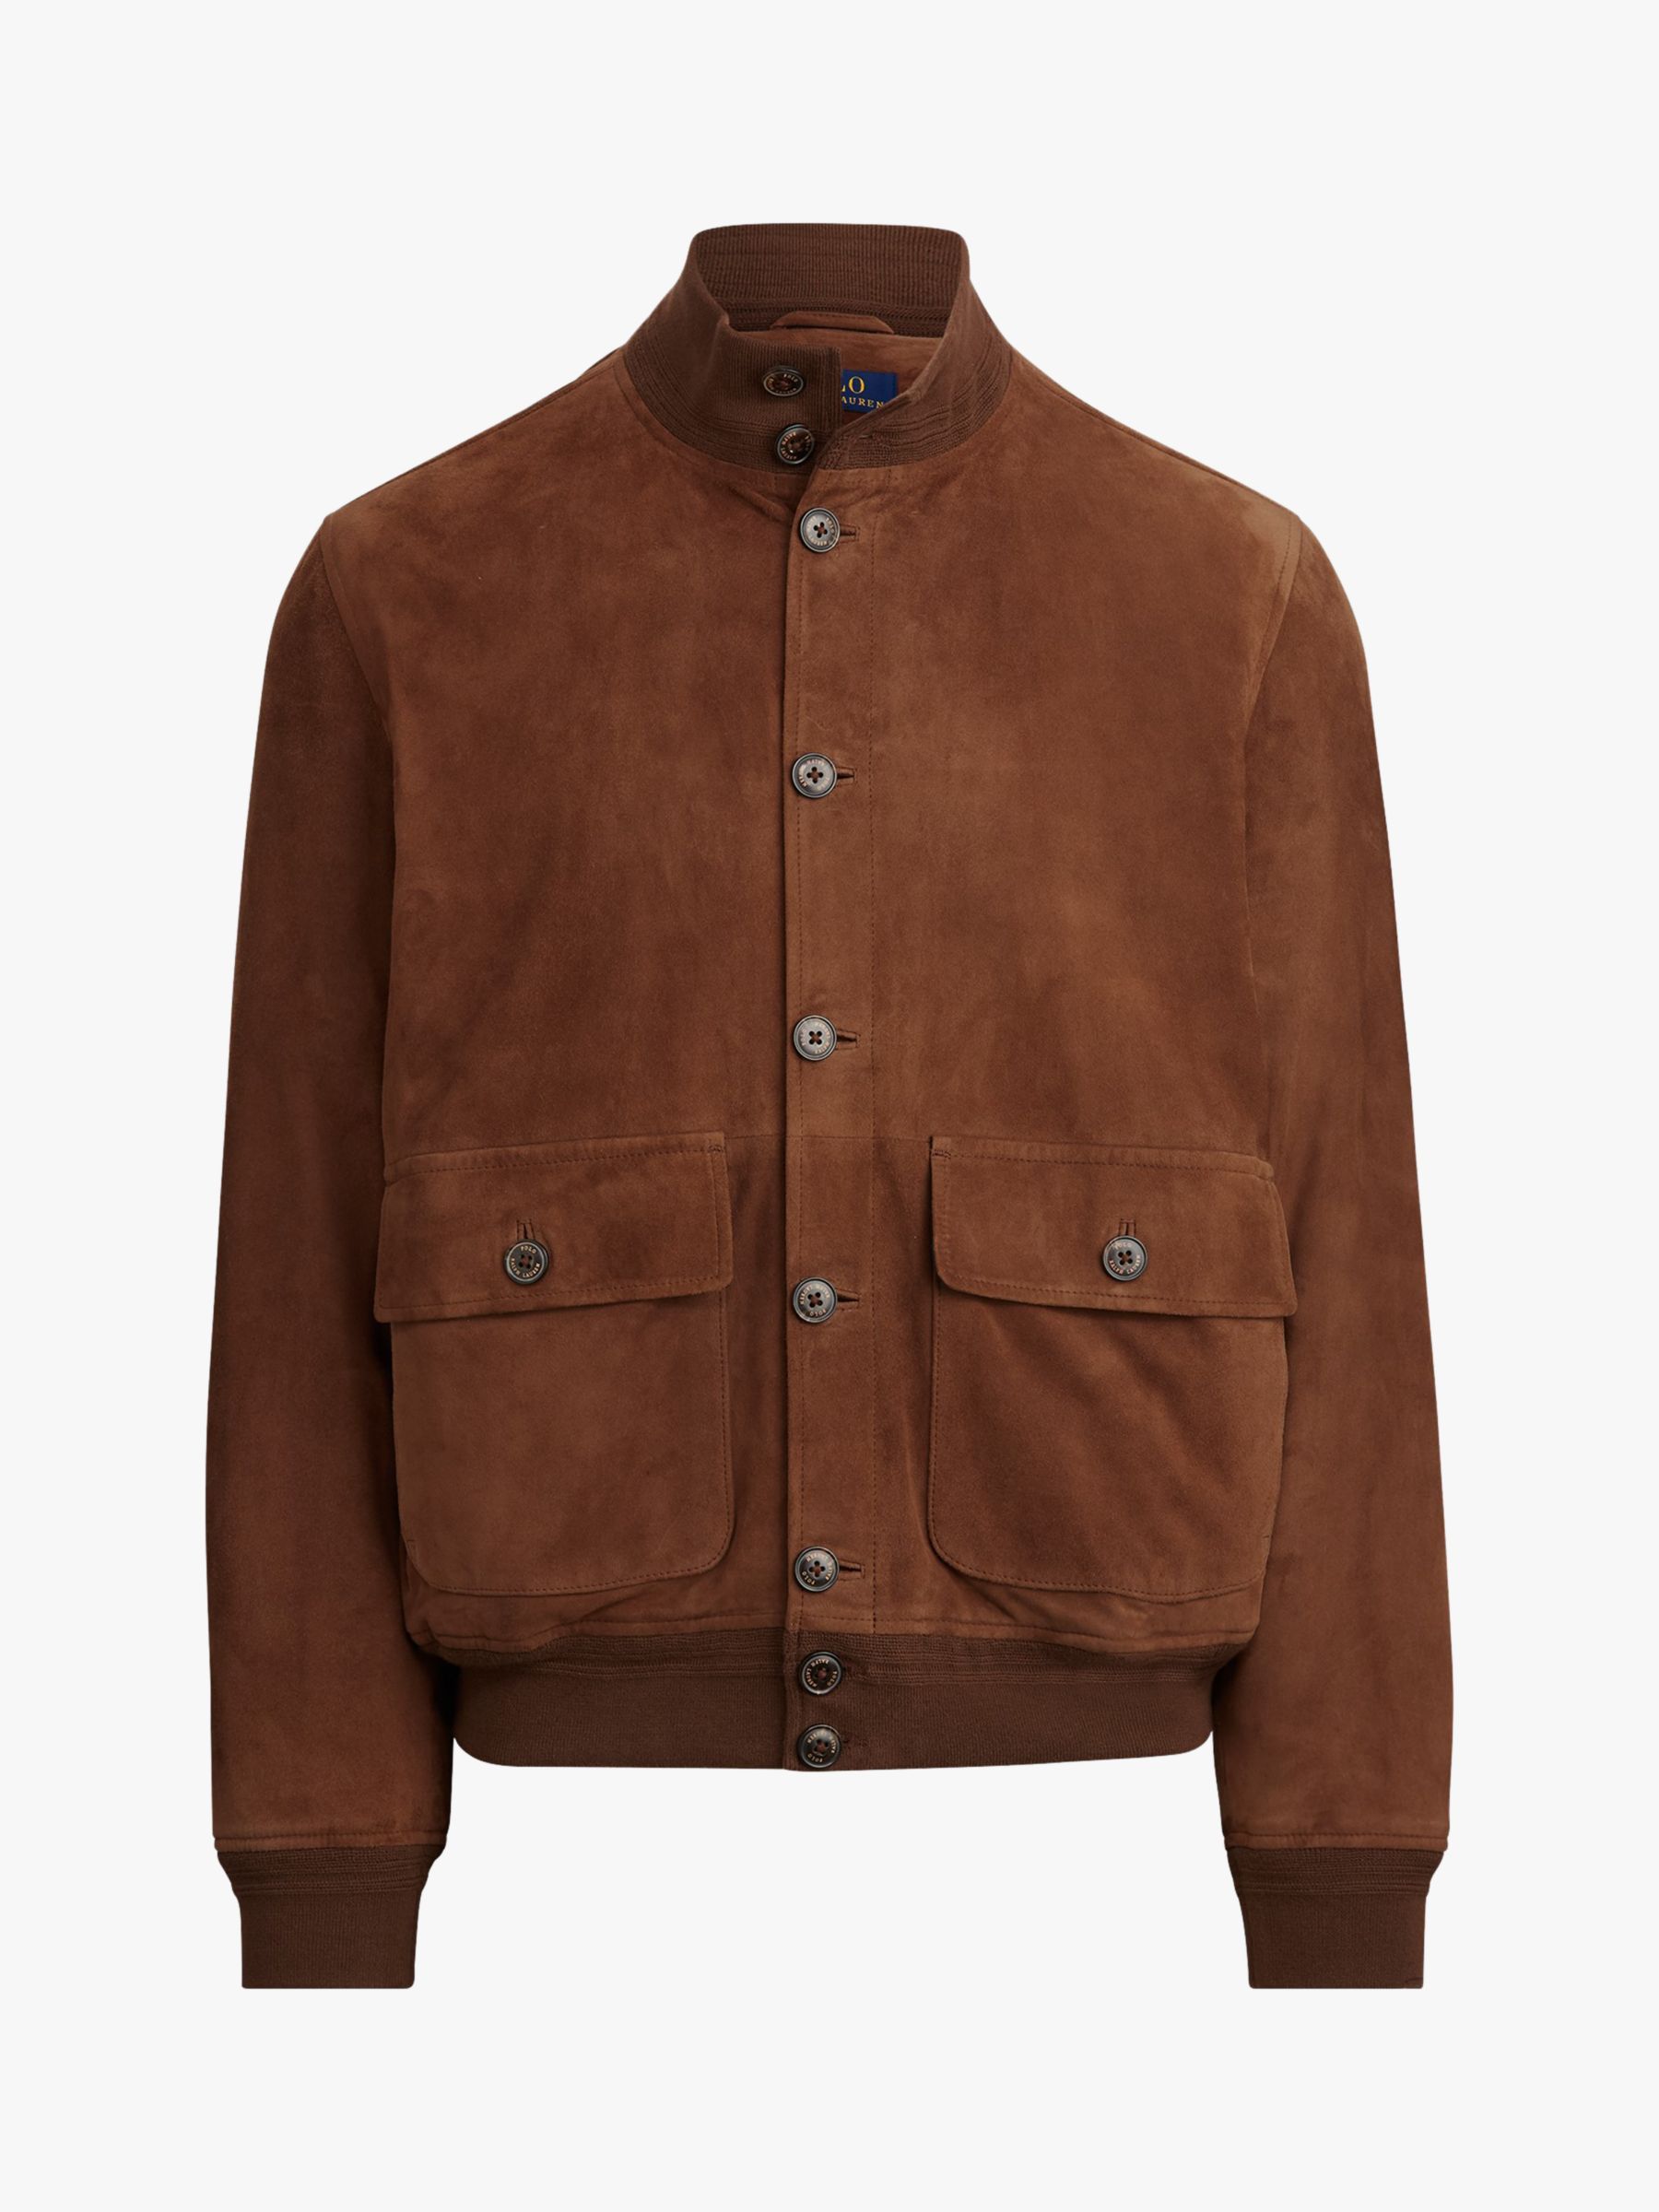 polo ralph lauren brown jacket